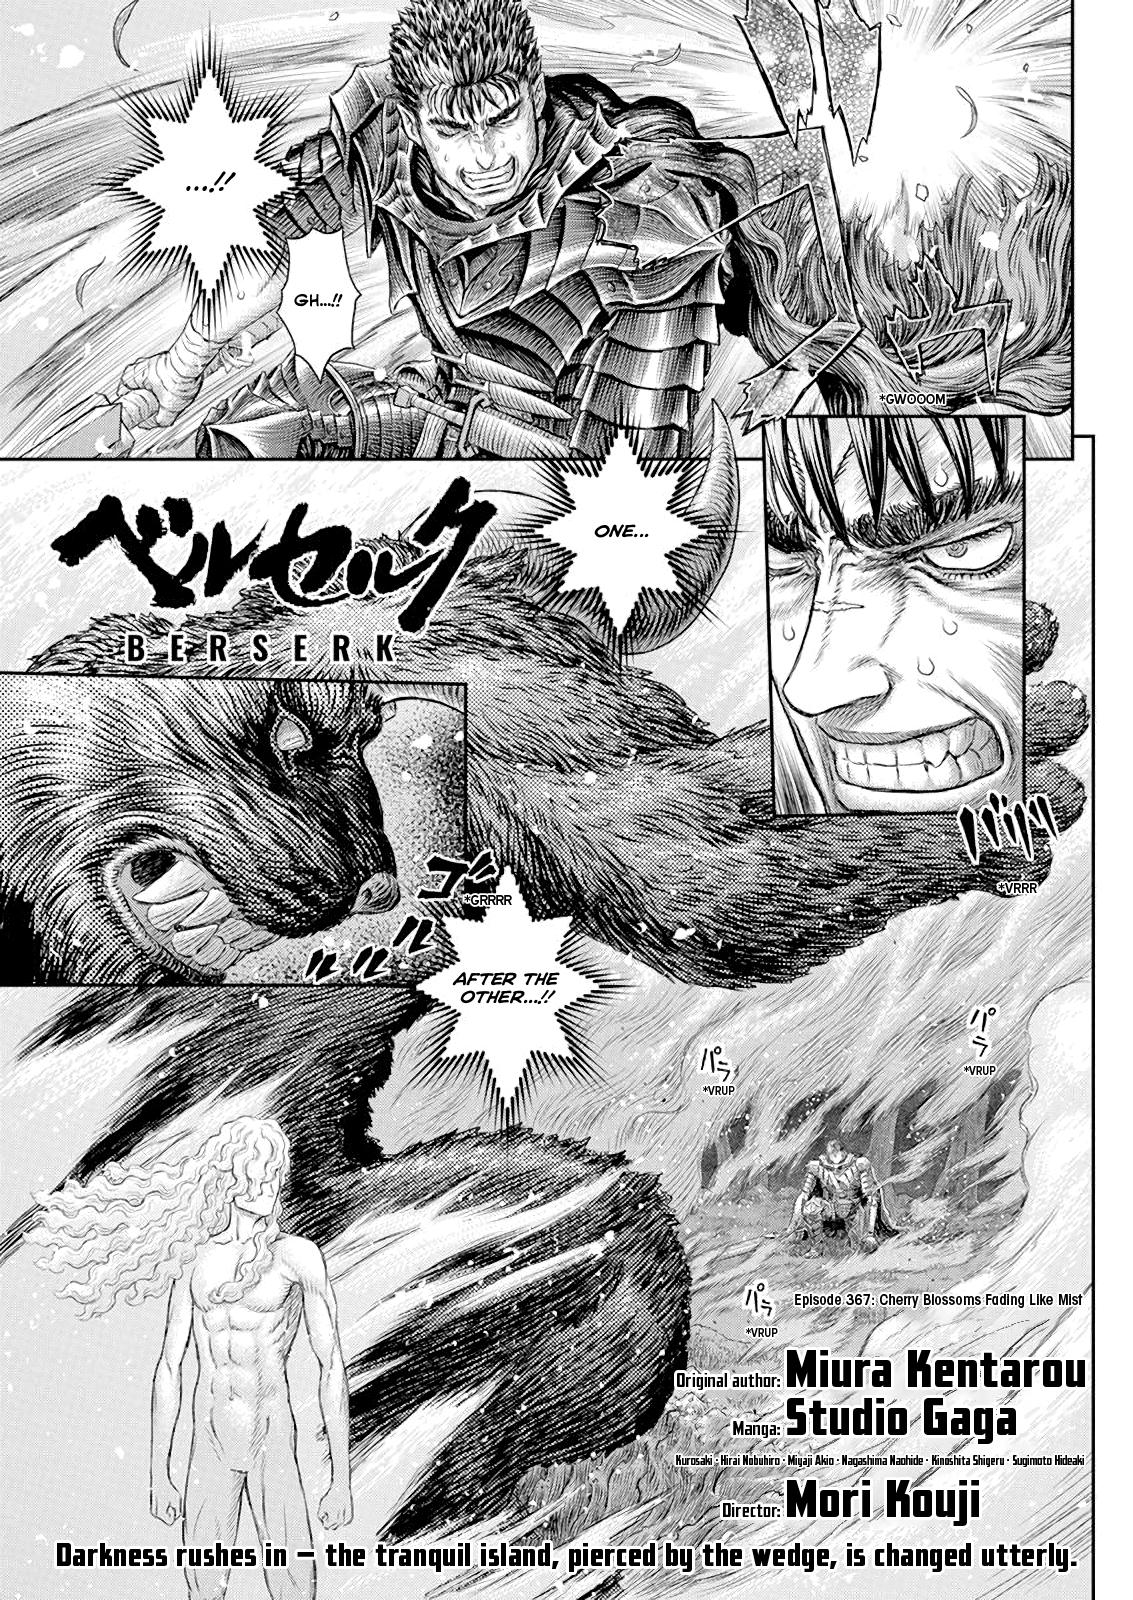 Berserk Manga Chapter 367 image 01